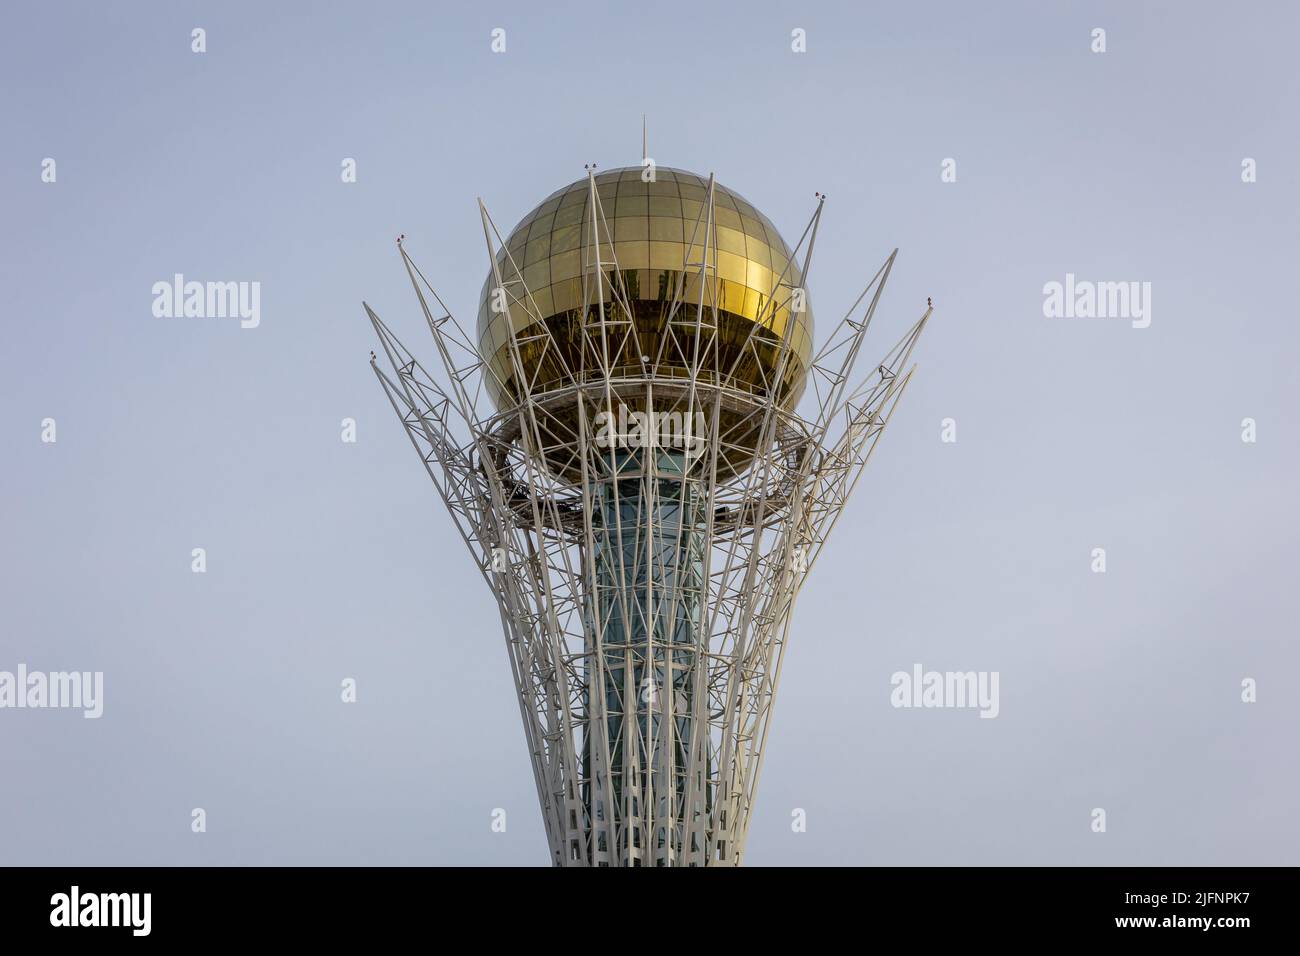 Nur Sultan (Astana), Kazakhstan, 11.11.21. Baiterek (Bayterek) Tower top, national landmark of Nur Sultan with golden sphere symbolizing golden egg Stock Photo